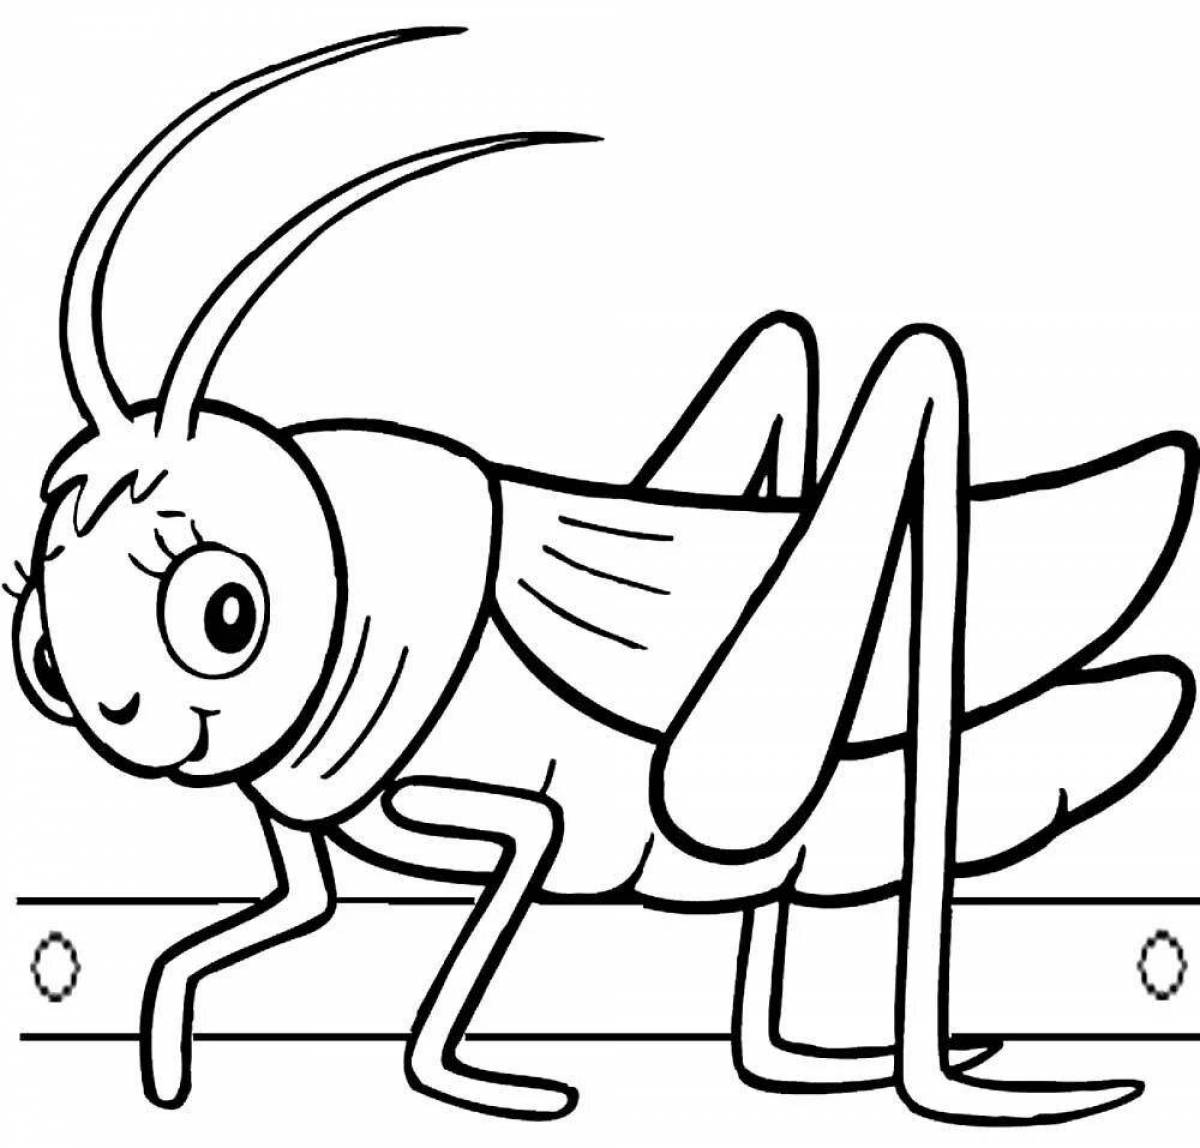 Coloring fairy locust